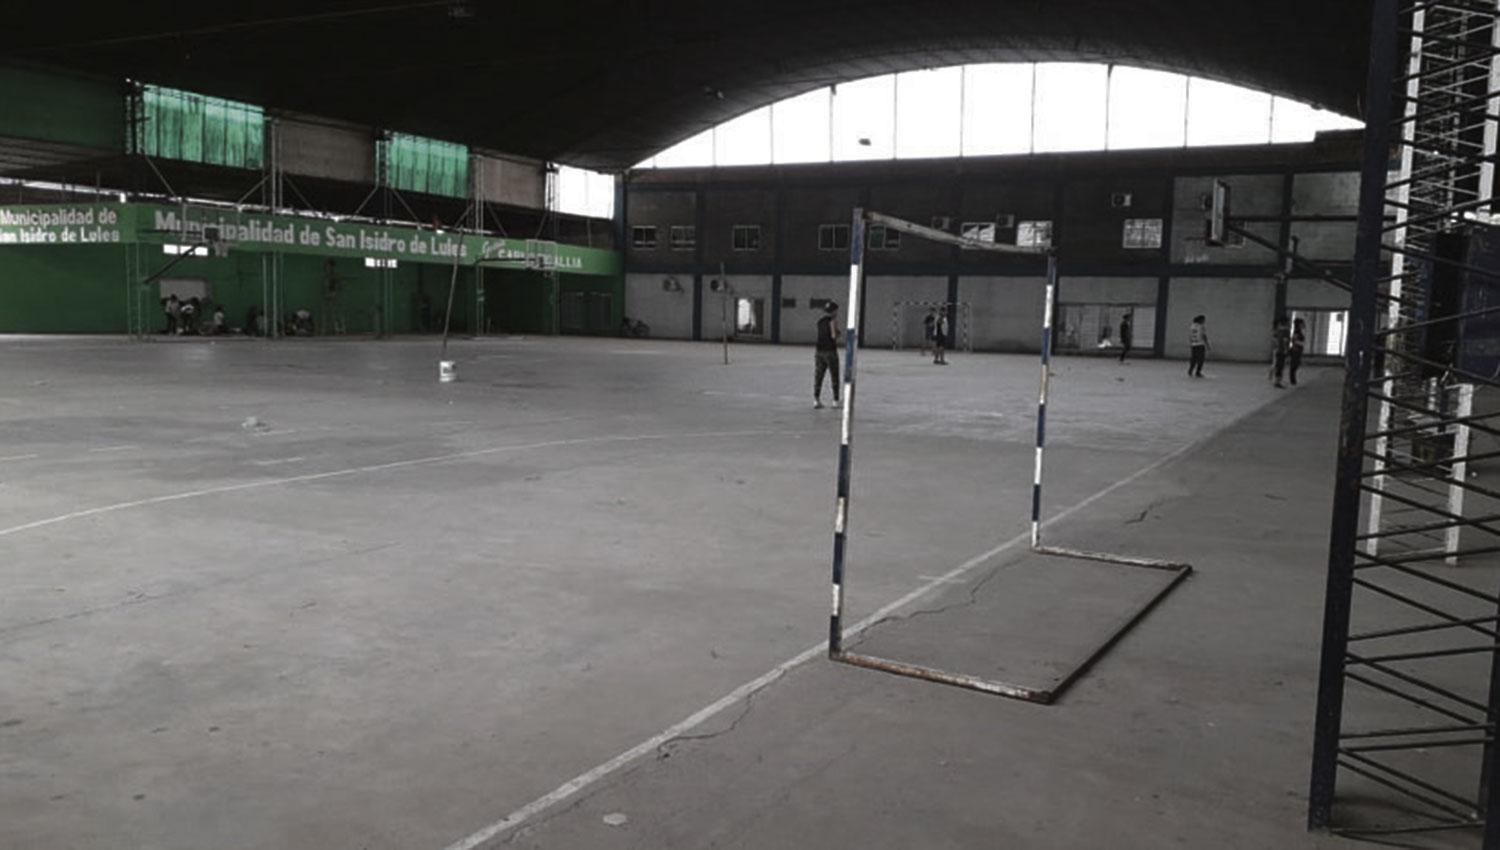 IMPONENTE. El tinglado que el club Almirante Brown tiene en su estadio, permite a los habitantes de San Isidro de Lules practicar diferentes deportes.  